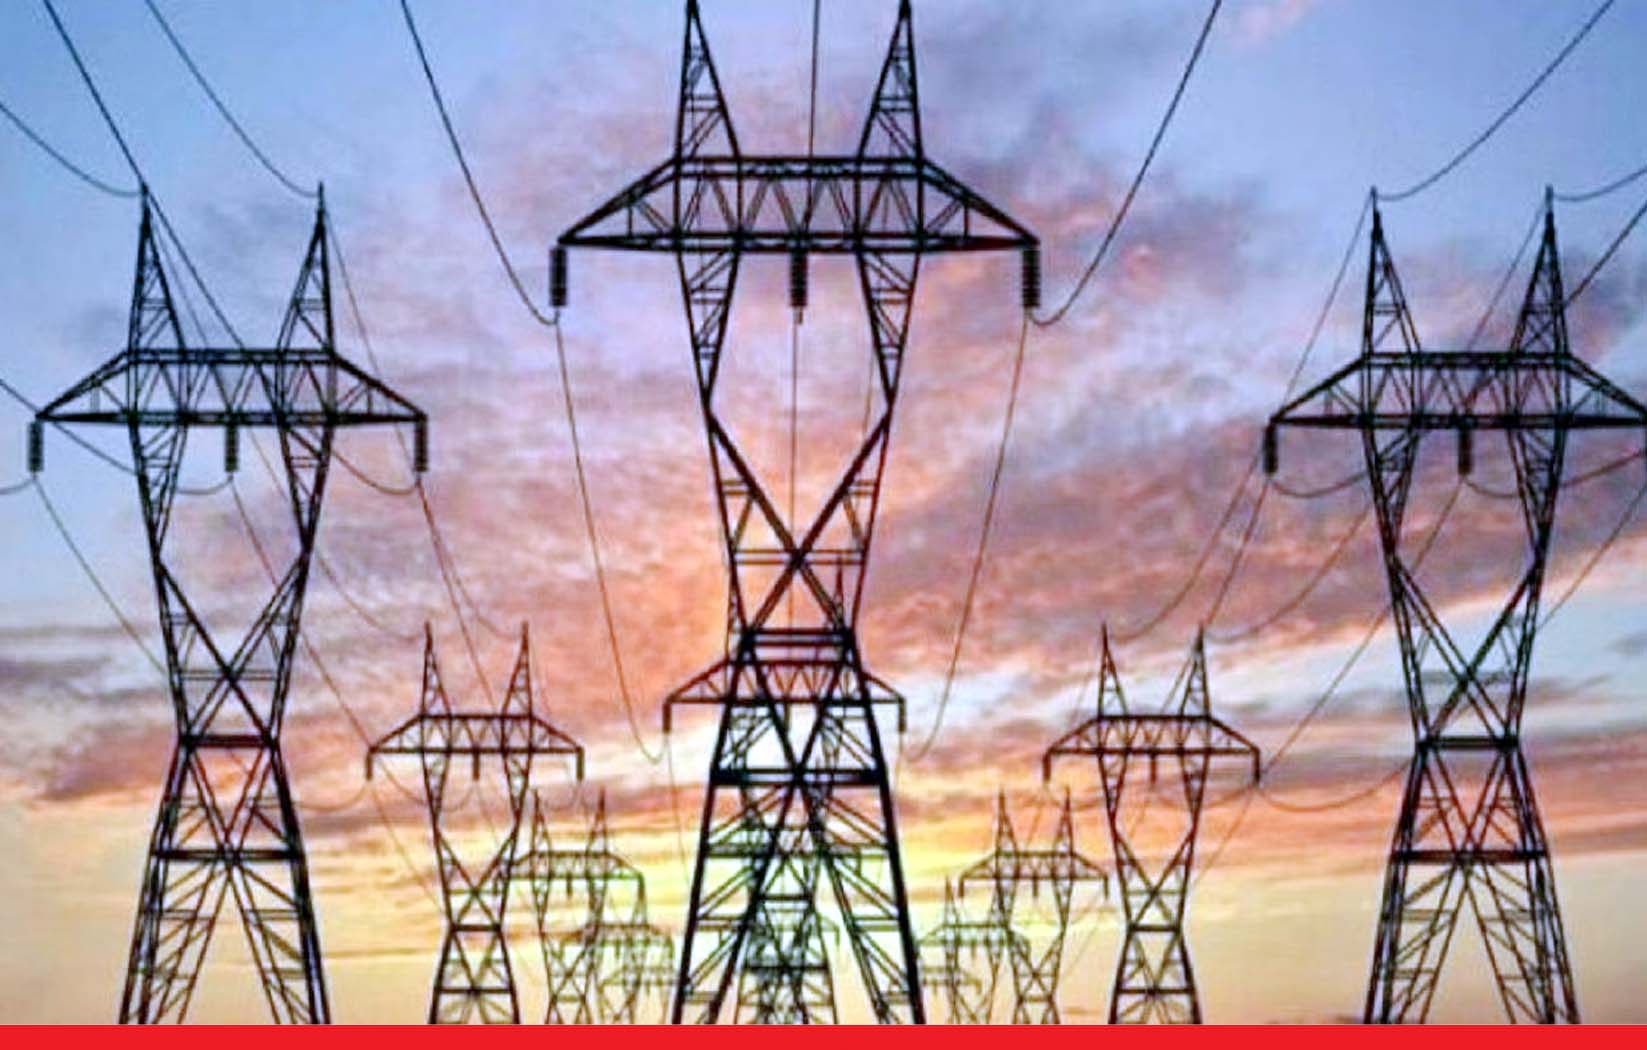 मध्यप्रदेश के बिजली कर्मचारी करेंगे 15 दिसंबर के बाद अनिश्चितकालीन हड़ताल